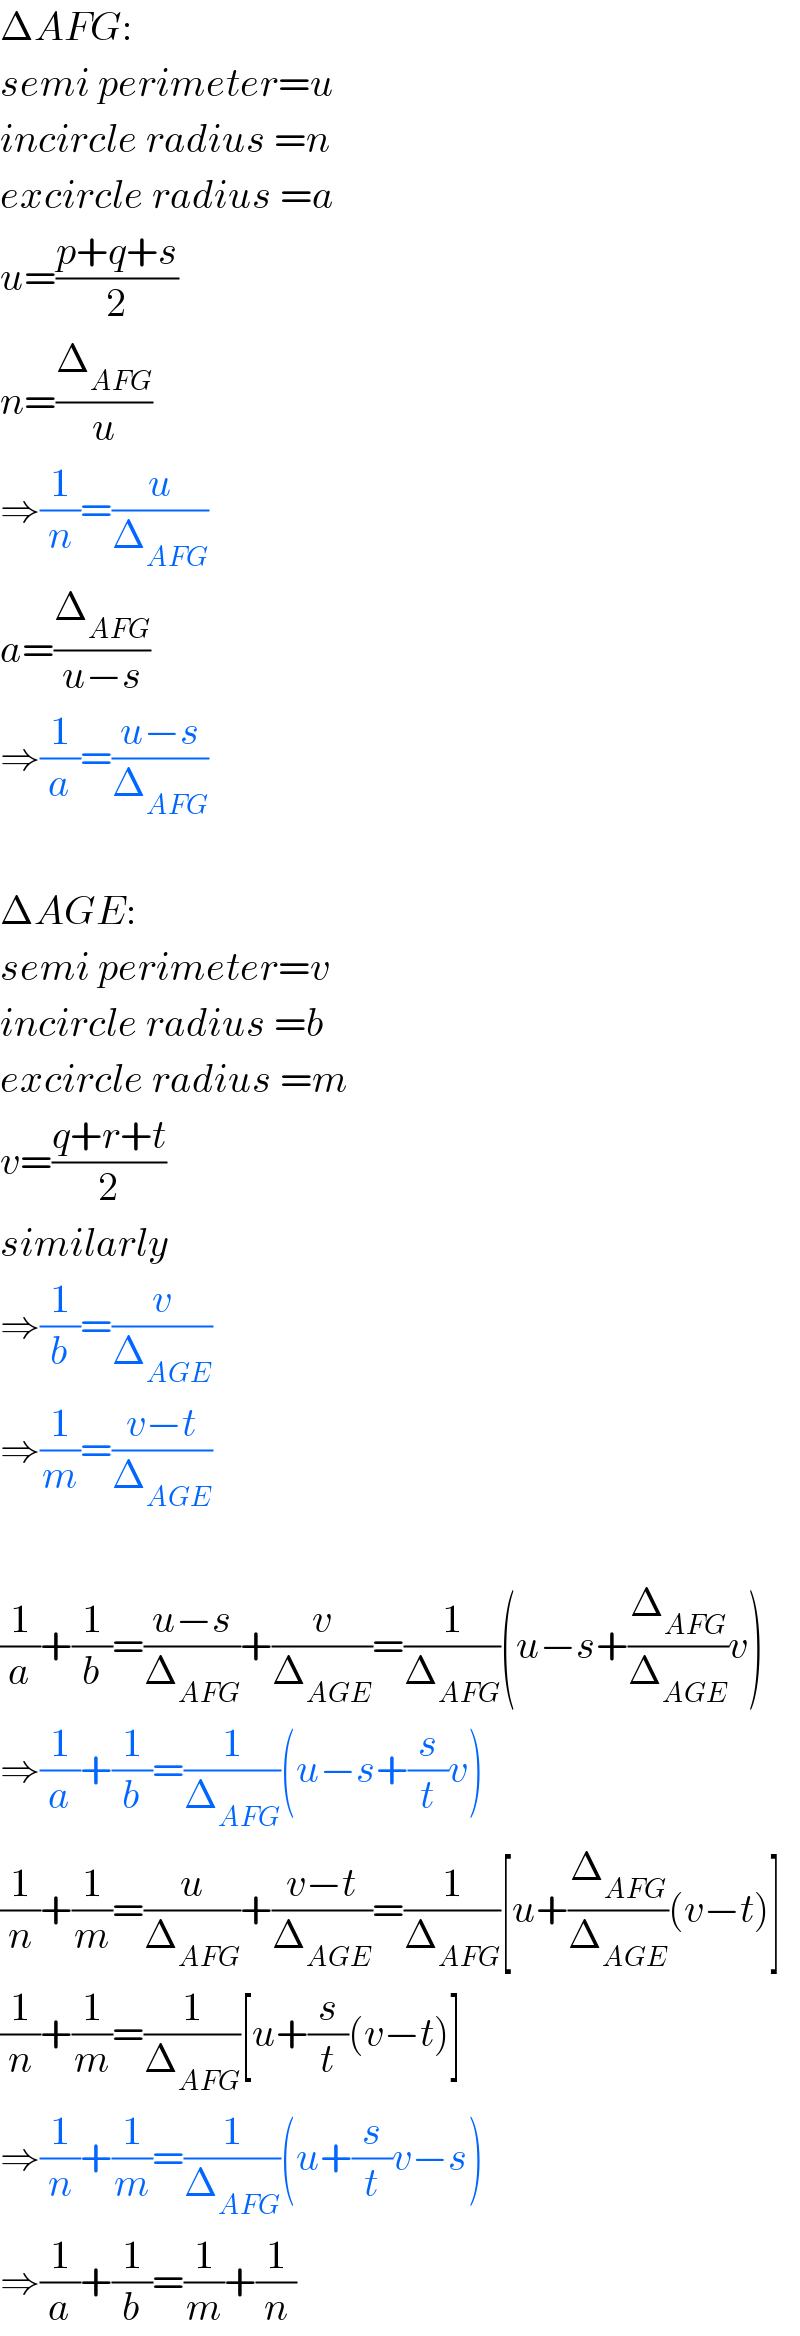 ΔAFG:  semi perimeter=u  incircle radius =n  excircle radius =a  u=((p+q+s)/2)  n=(Δ_(AFG) /u)  ⇒(1/n)=(u/Δ_(AFG) )  a=(Δ_(AFG) /(u−s))  ⇒(1/a)=((u−s)/Δ_(AFG) )    ΔAGE:  semi perimeter=v  incircle radius =b  excircle radius =m  v=((q+r+t)/2)  similarly  ⇒(1/b)=(v/Δ_(AGE) )  ⇒(1/m)=((v−t)/Δ_(AGE) )    (1/a)+(1/b)=((u−s)/Δ_(AFG) )+(v/Δ_(AGE) )=(1/Δ_(AFG) )(u−s+(Δ_(AFG) /Δ_(AGE) )v)  ⇒(1/a)+(1/b)=(1/Δ_(AFG) )(u−s+(s/t)v)  (1/n)+(1/m)=(u/Δ_(AFG) )+((v−t)/Δ_(AGE) )=(1/Δ_(AFG) )[u+(Δ_(AFG) /Δ_(AGE) )(v−t)]  (1/n)+(1/m)=(1/Δ_(AFG) )[u+(s/t)(v−t)]  ⇒(1/n)+(1/m)=(1/Δ_(AFG) )(u+(s/t)v−s)  ⇒(1/a)+(1/b)=(1/m)+(1/n)  